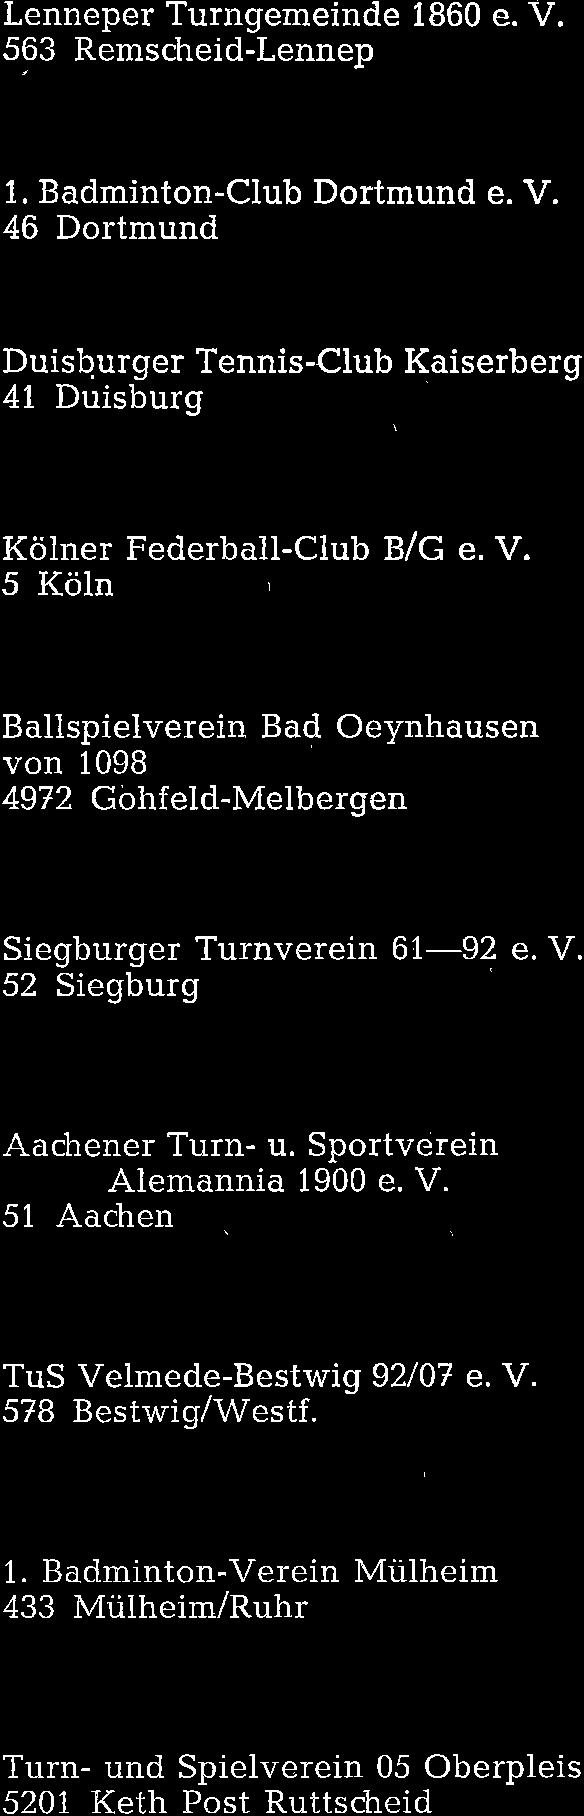 Sportverein lemannia 1900 e. V. 51 achen Vaalser Str. 110 rl. omoth 68 Turn- und Spielverein 04 Rheinhausen e. V. 414 Rheinhausen ochemmericher Straße 69 err agemeister 4t) TUS Velmede-estwig 92/07 e.